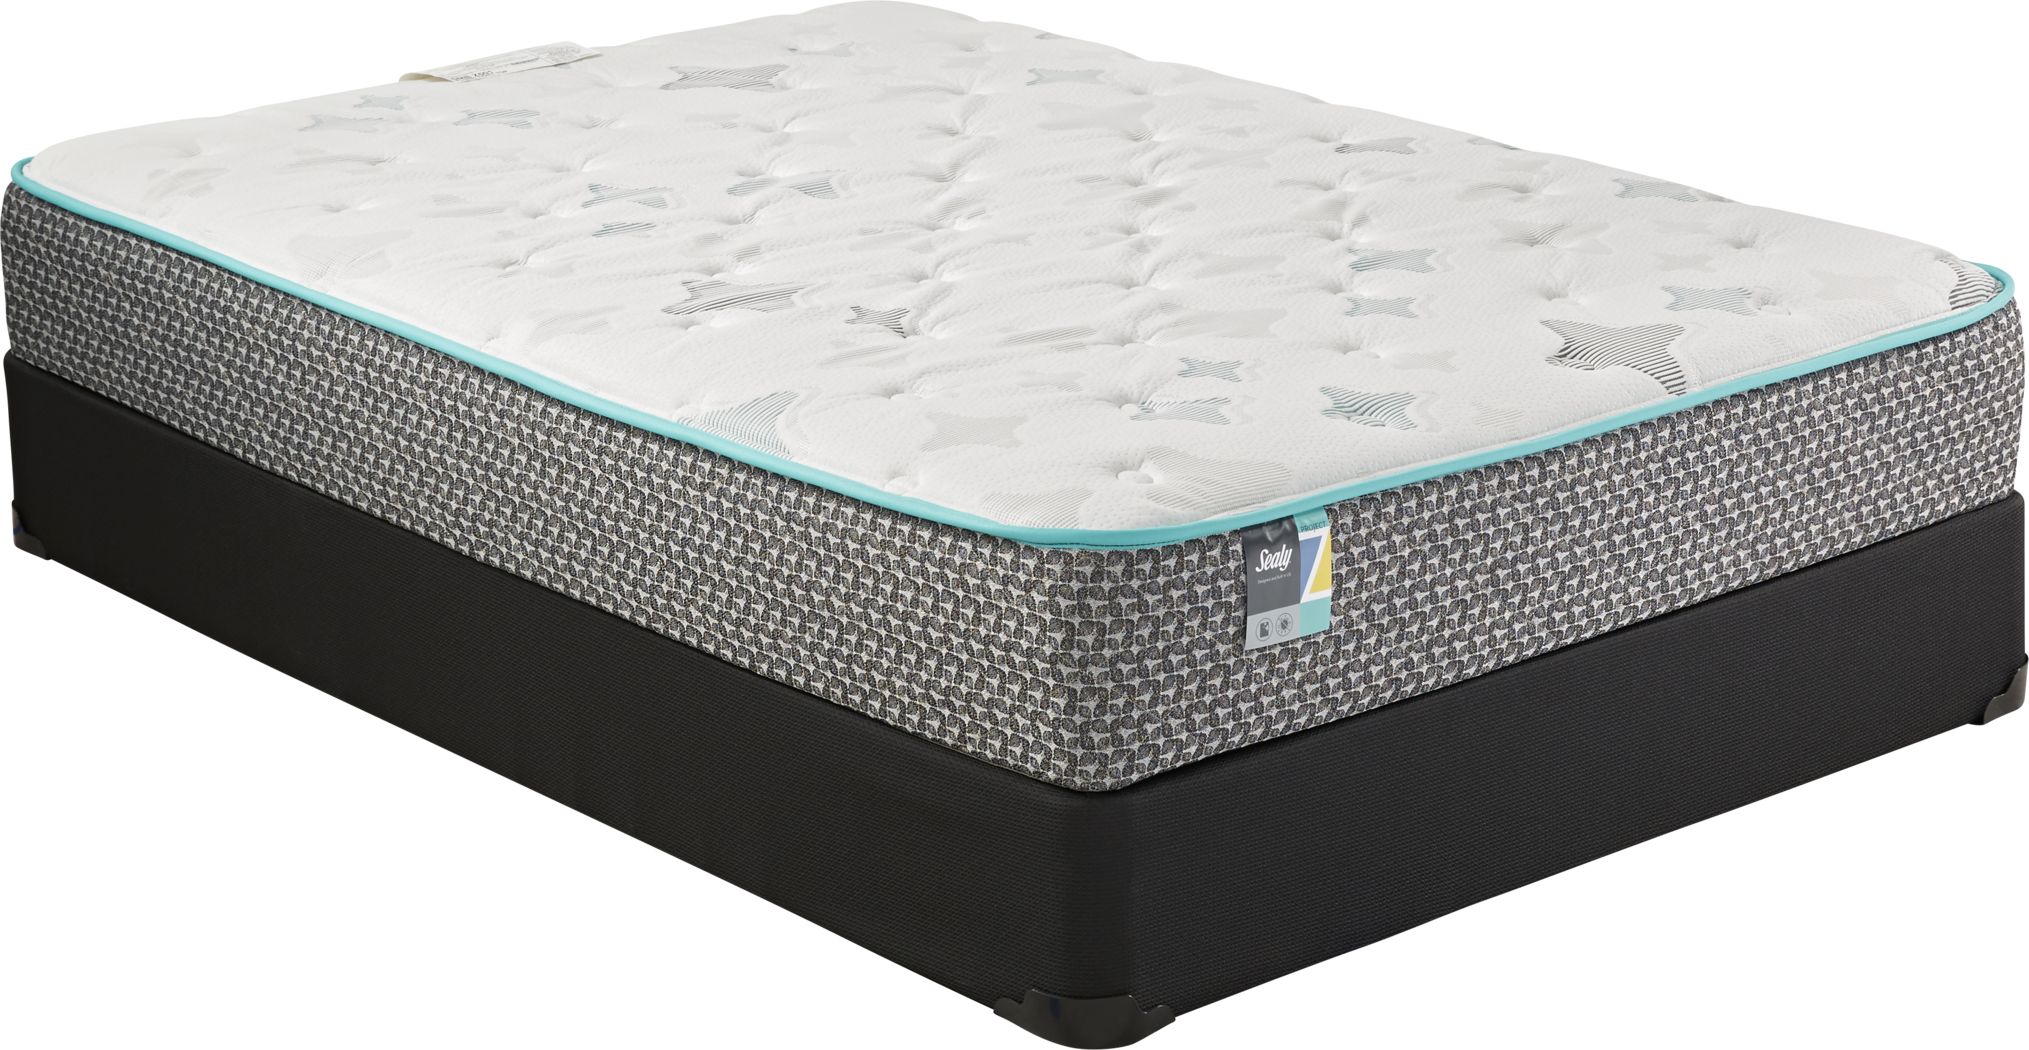 wayfair full size mattress set